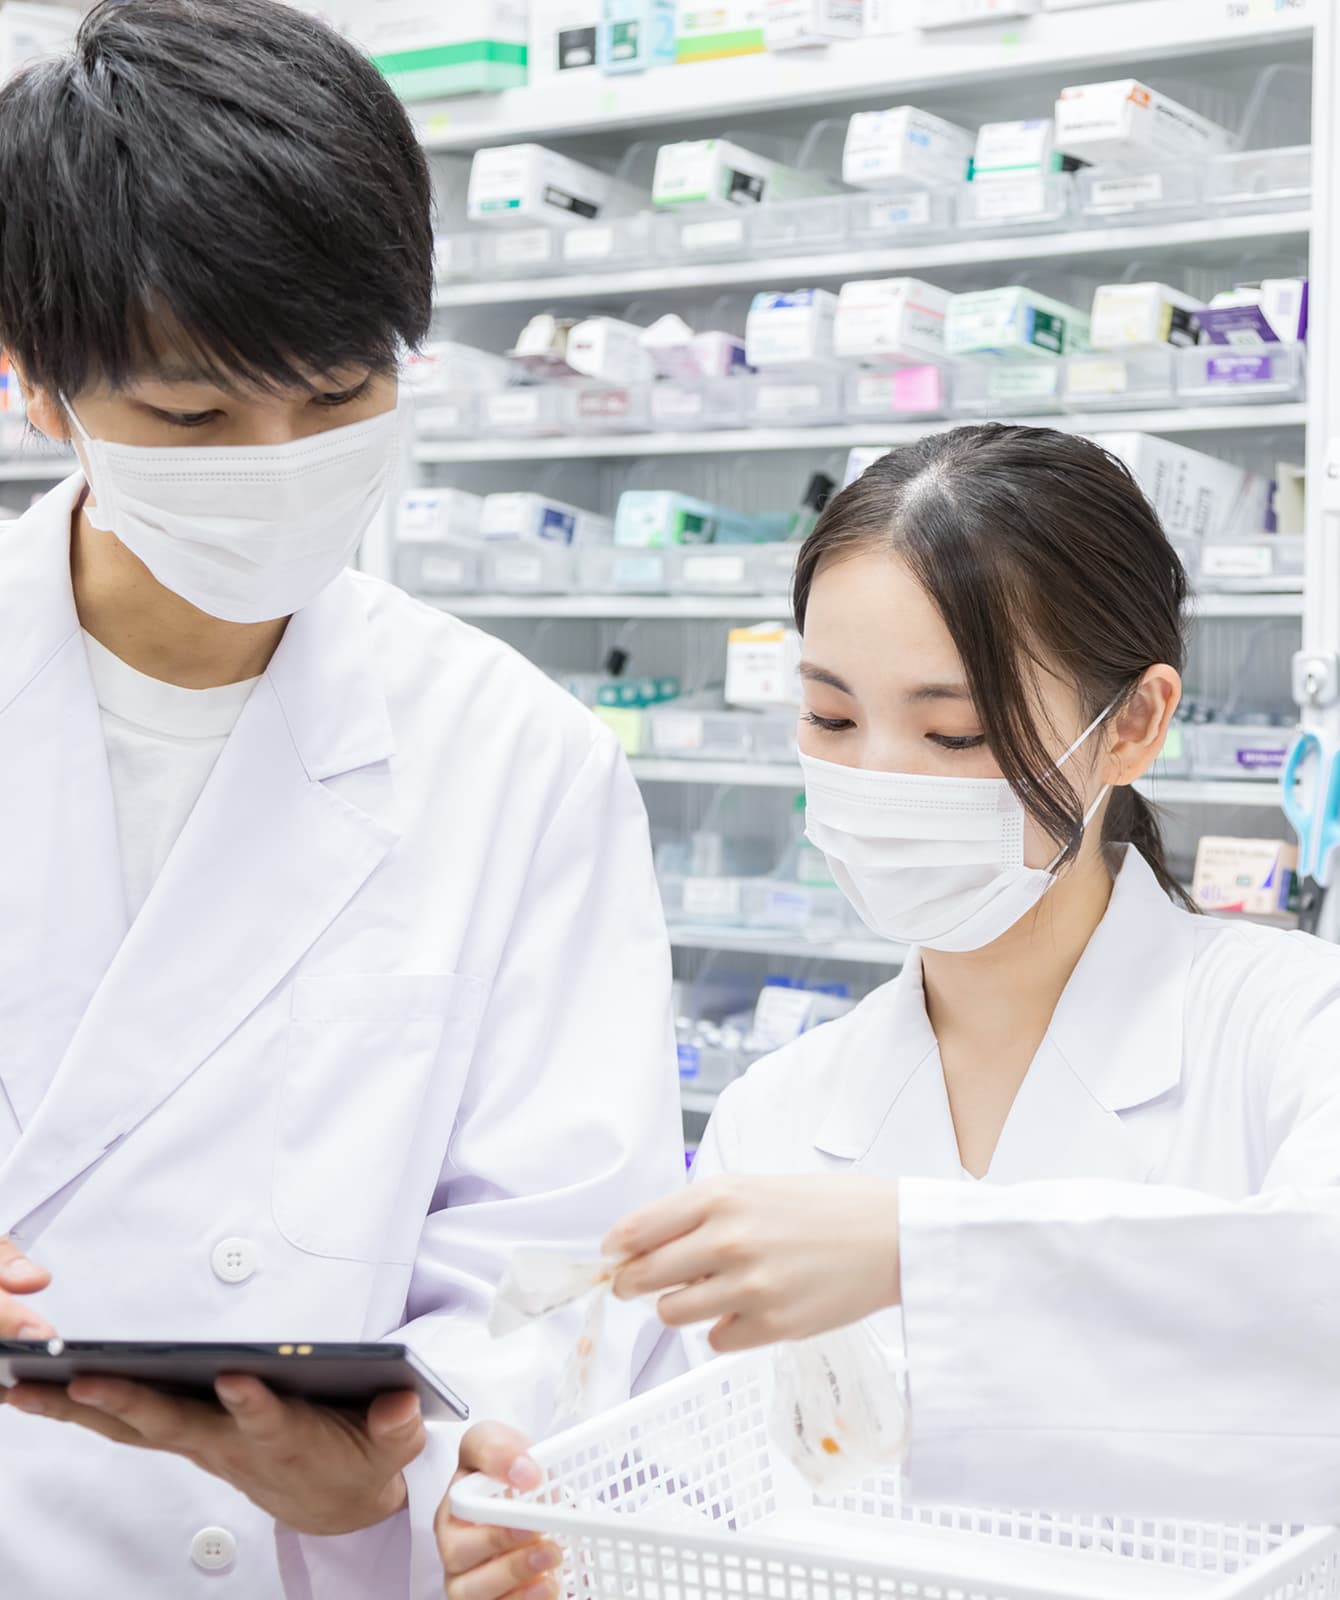 私たちヘルスエコノミクス研究所は静岡県下に9店舗広がるハロー薬局を運営しています。